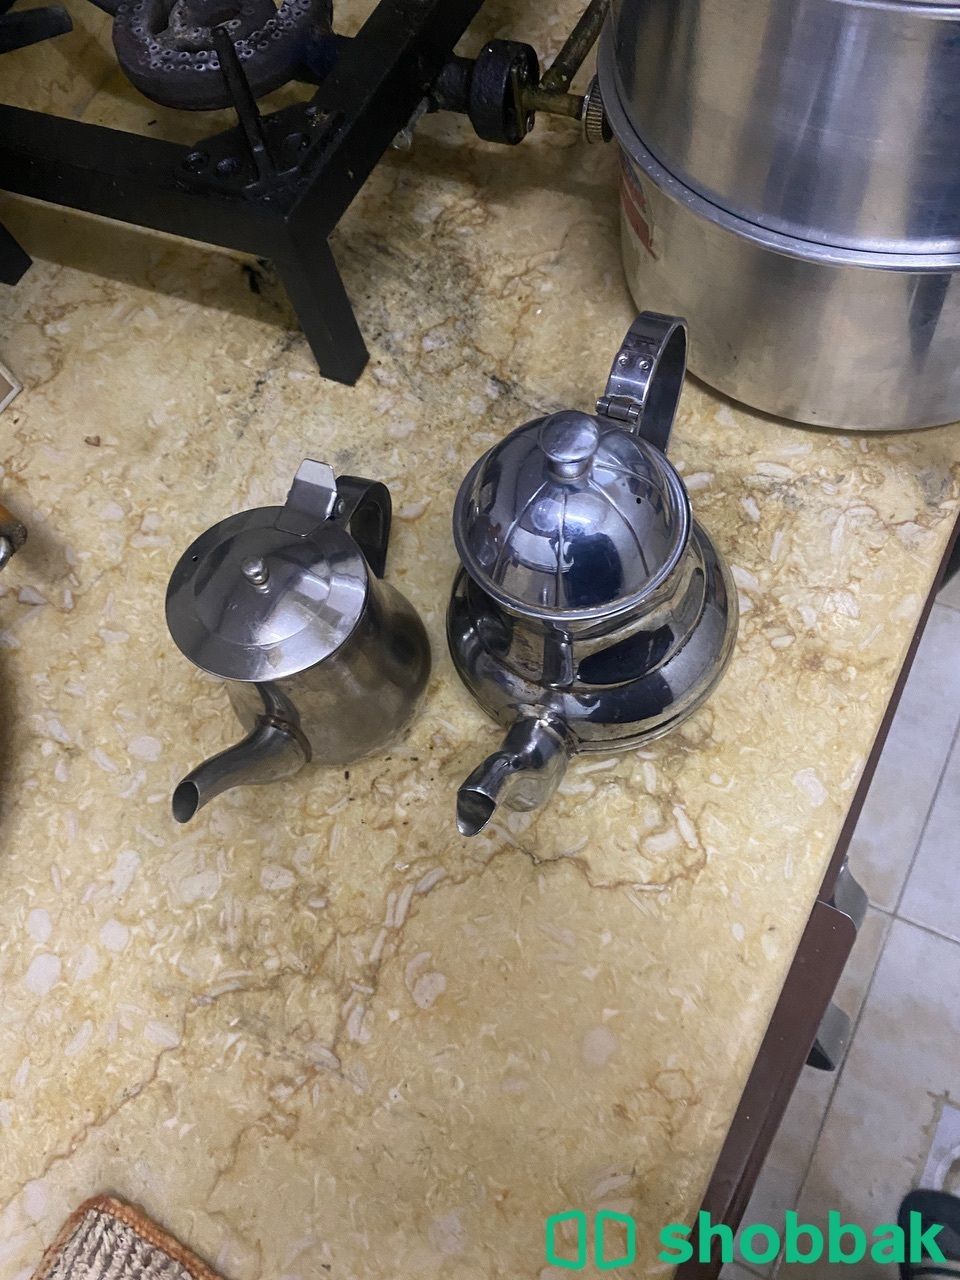 كدرة ضغط ومكينة قهوة مغربية براد مغربي Shobbak Saudi Arabia